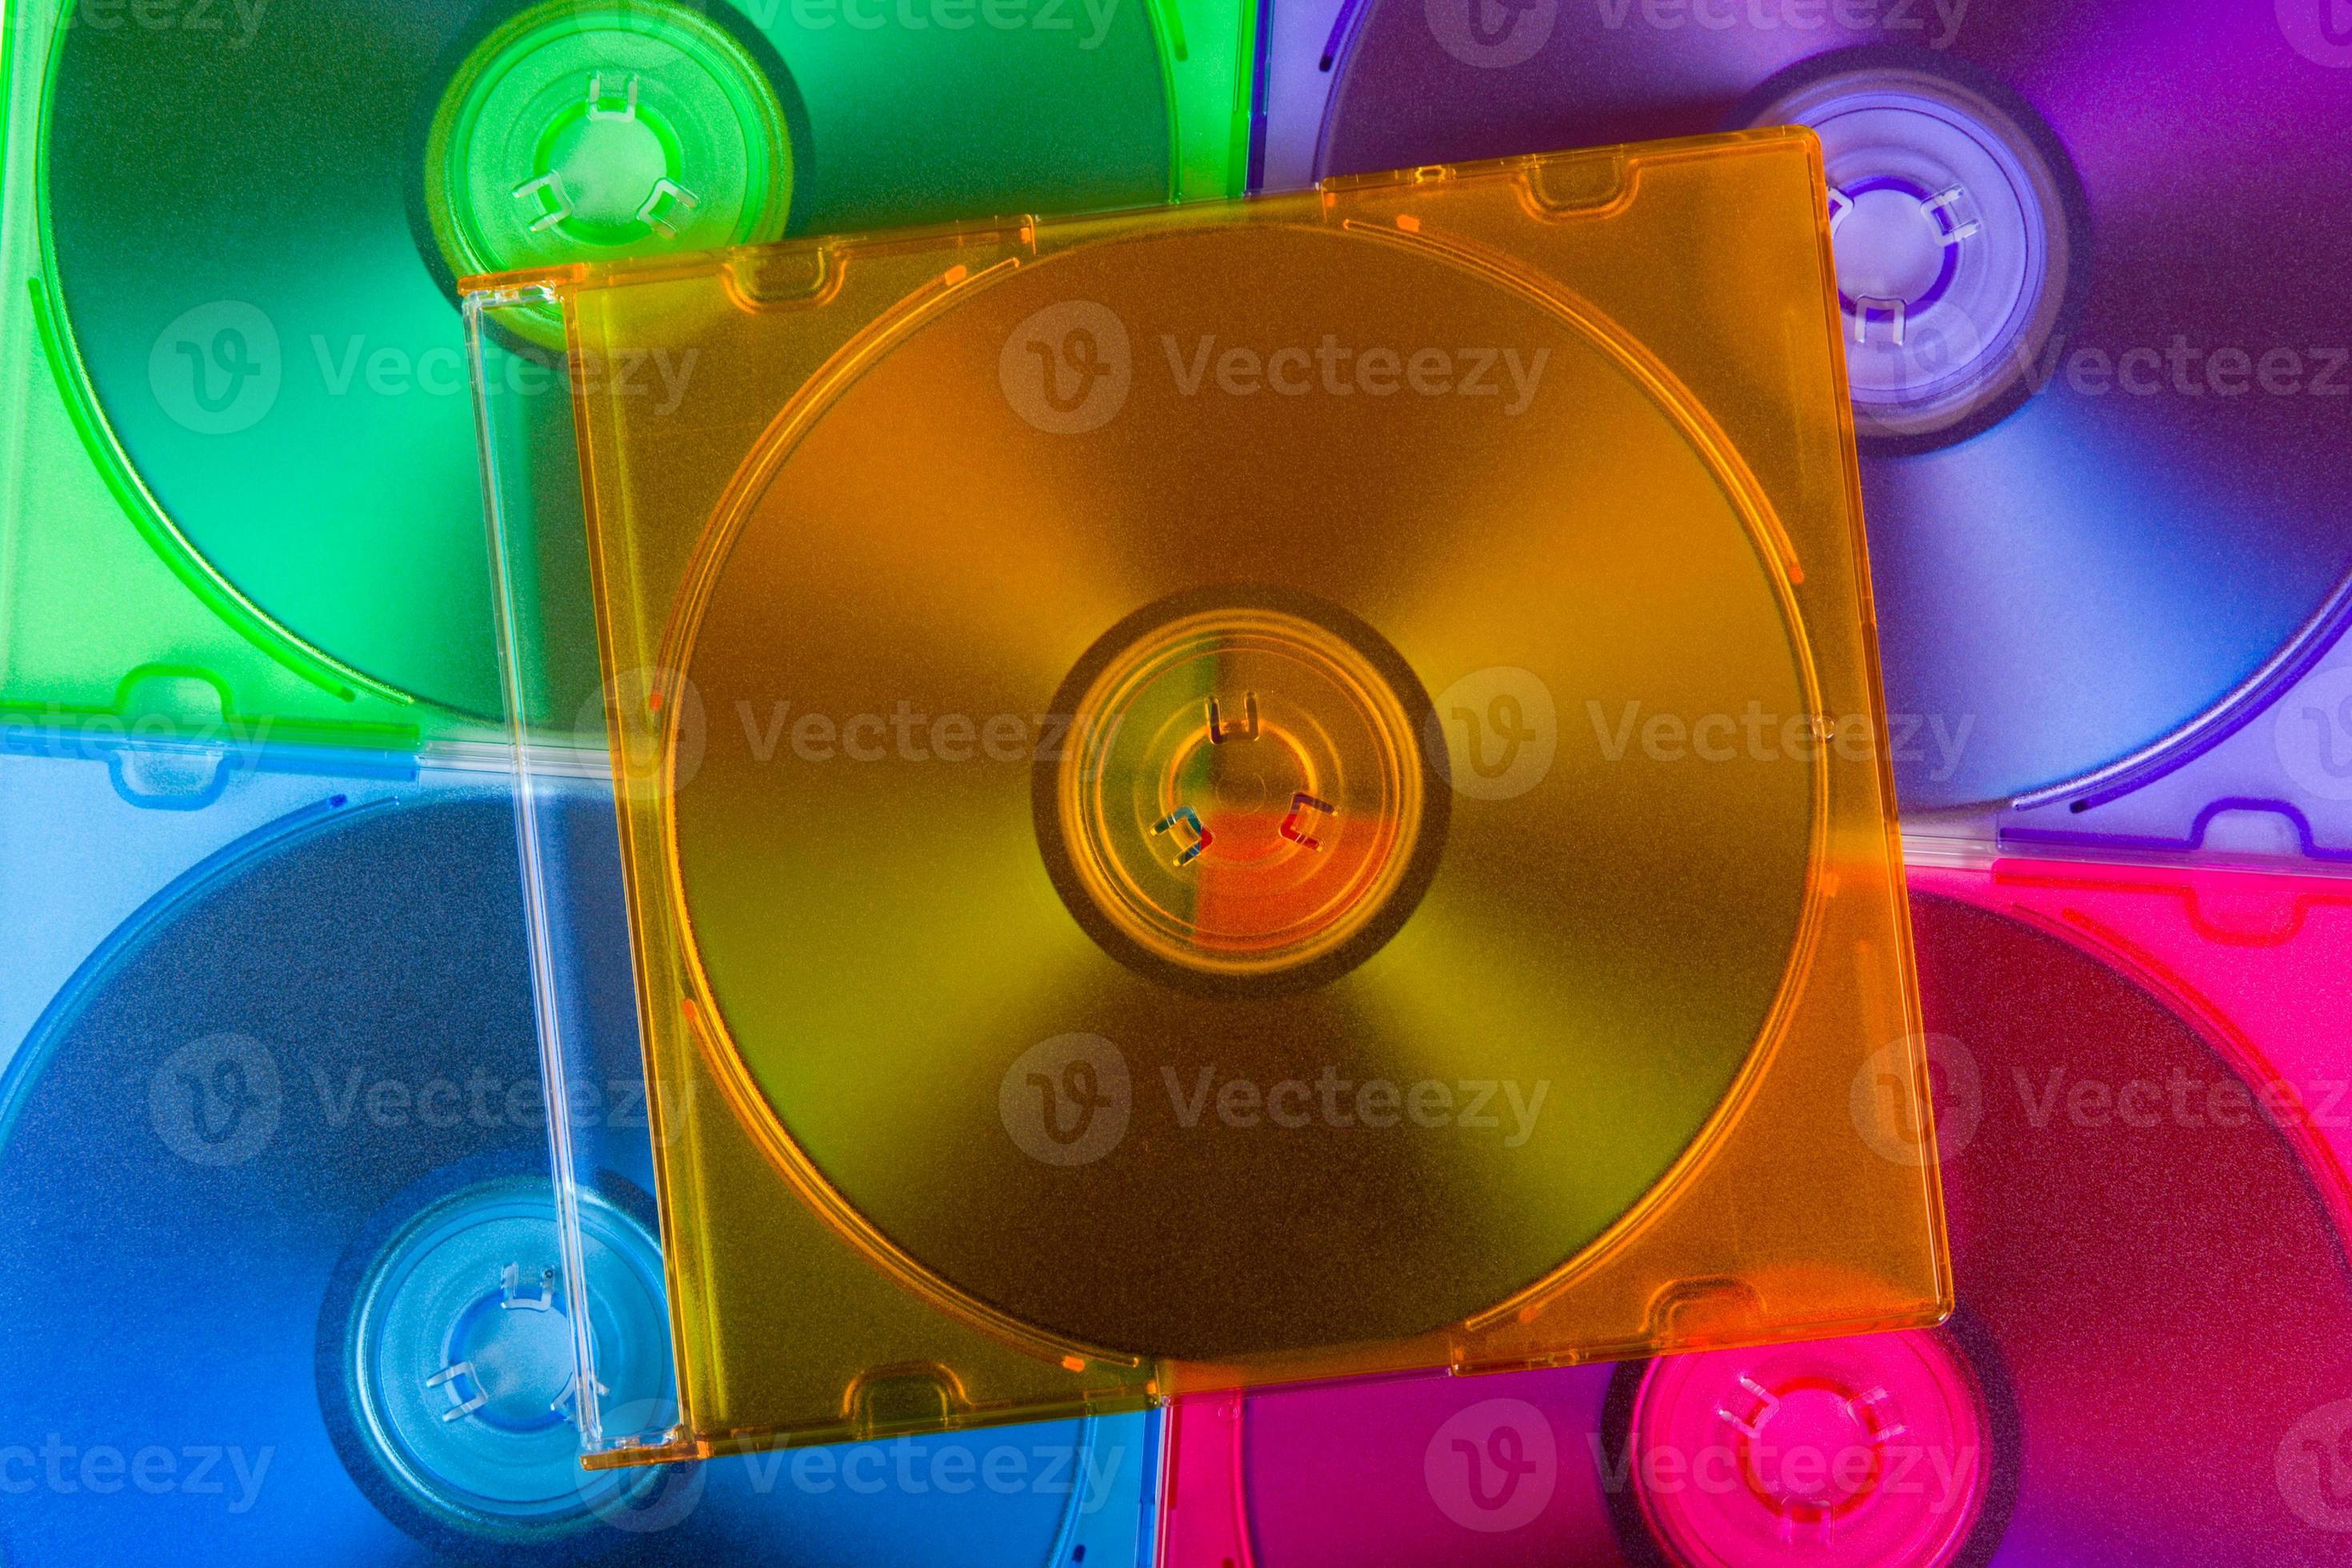 disques informatiques dans des boîtes multicolores photo